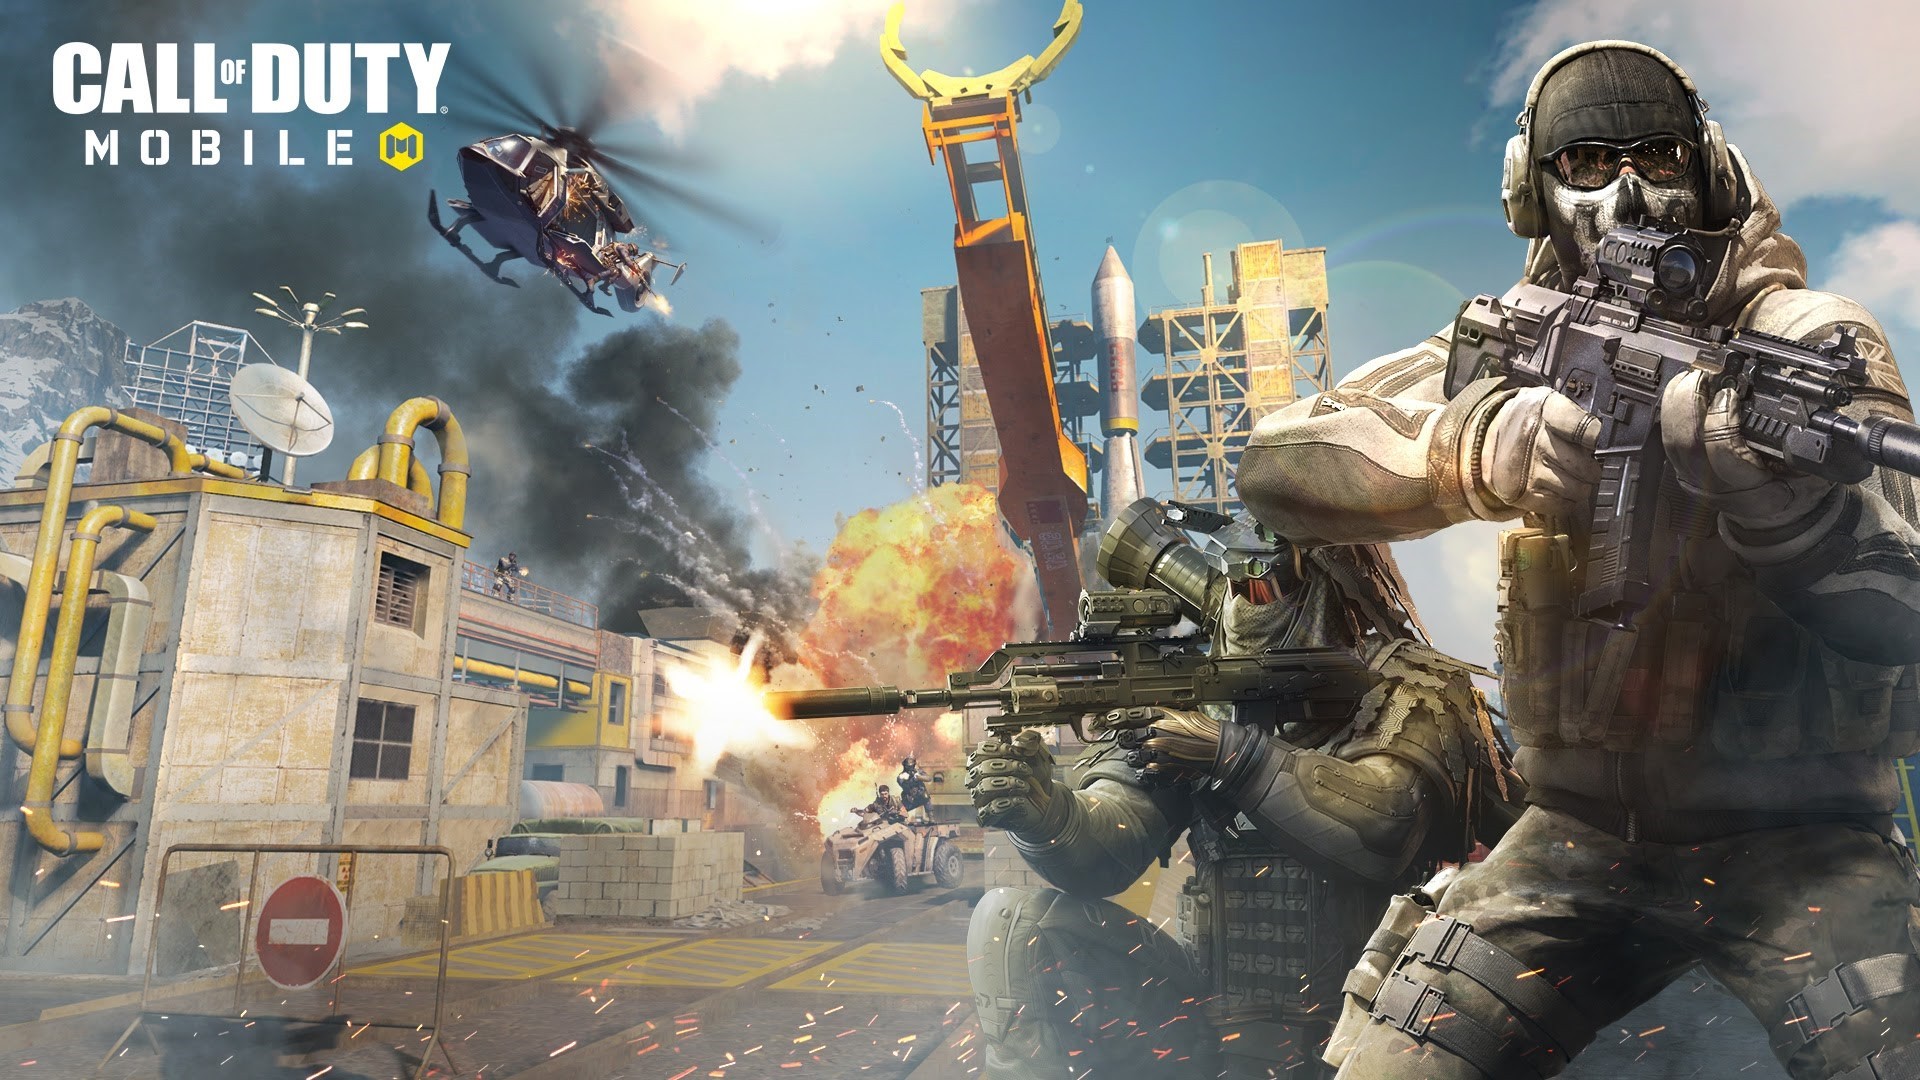 Prximo Call of Duty tem supostas imagens vazadas que revelam design e modos de jogo